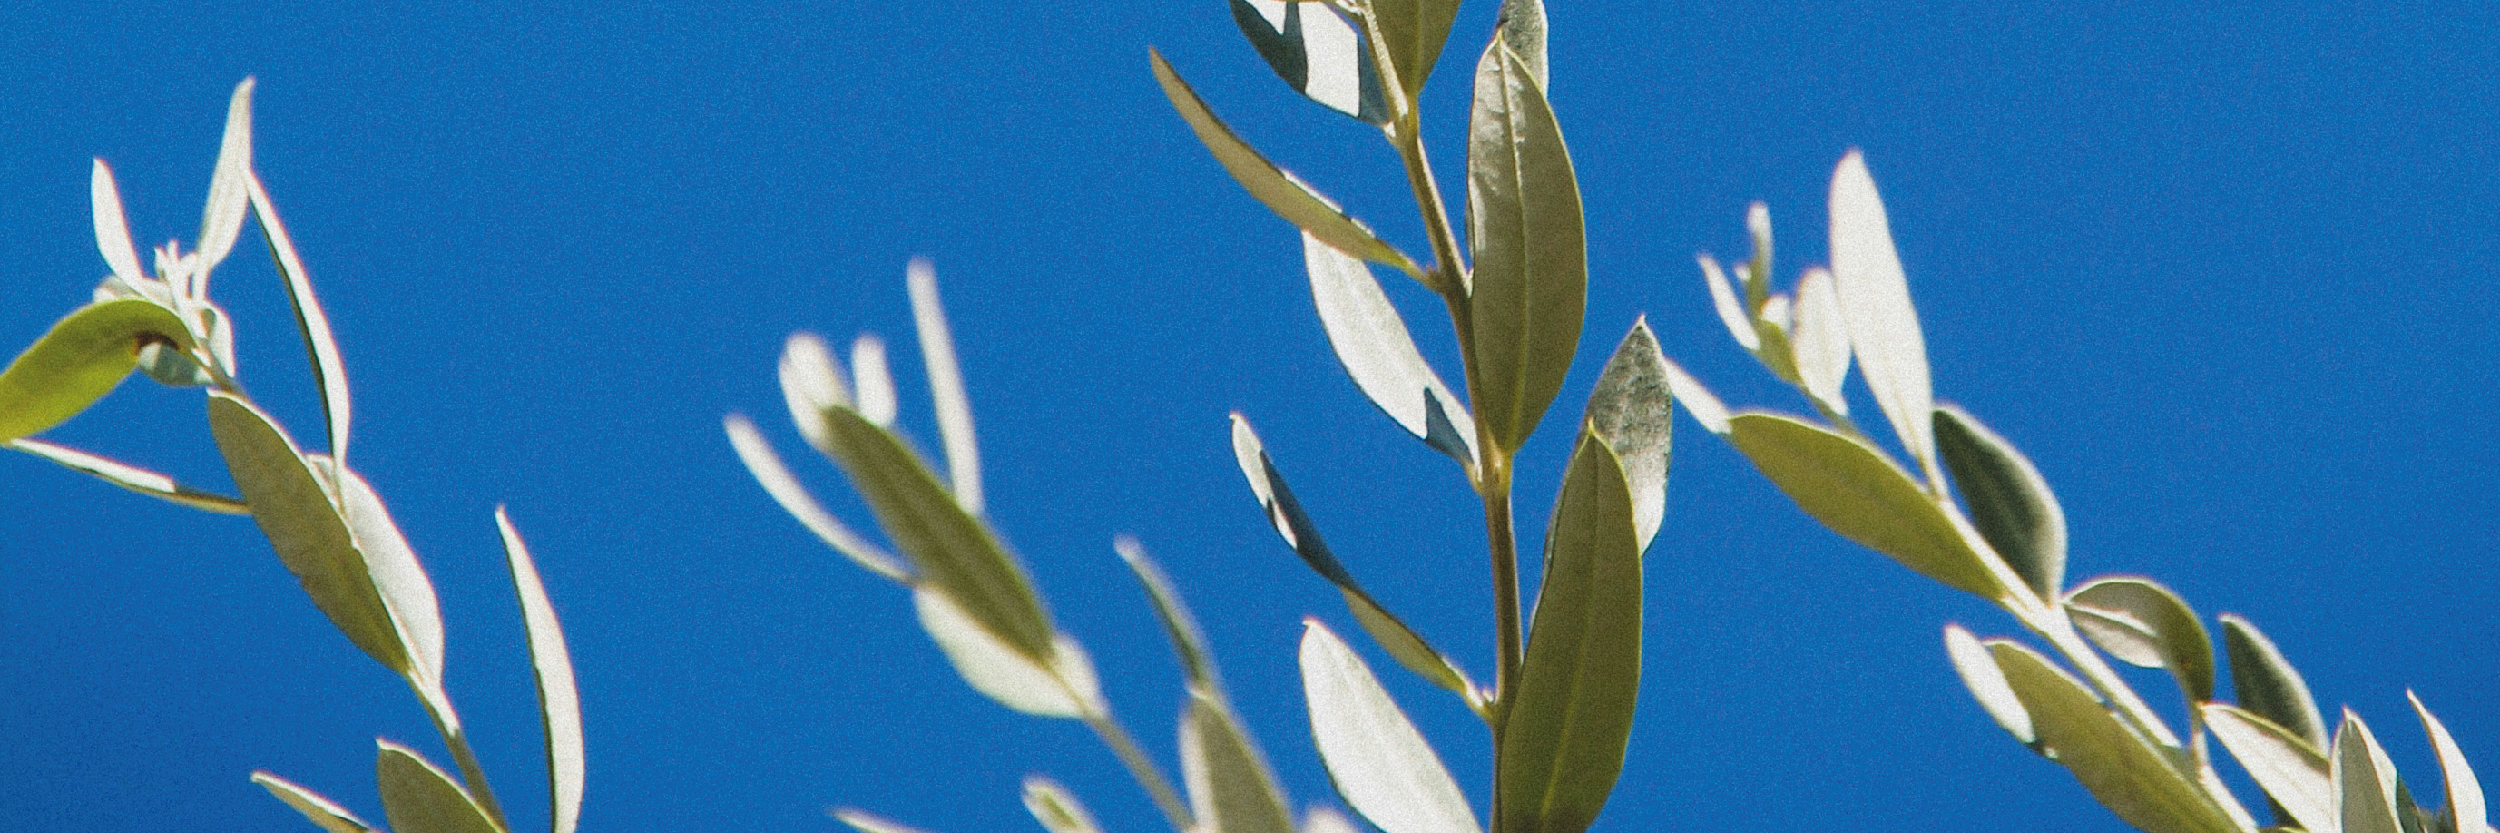 fioritura dell'olivo